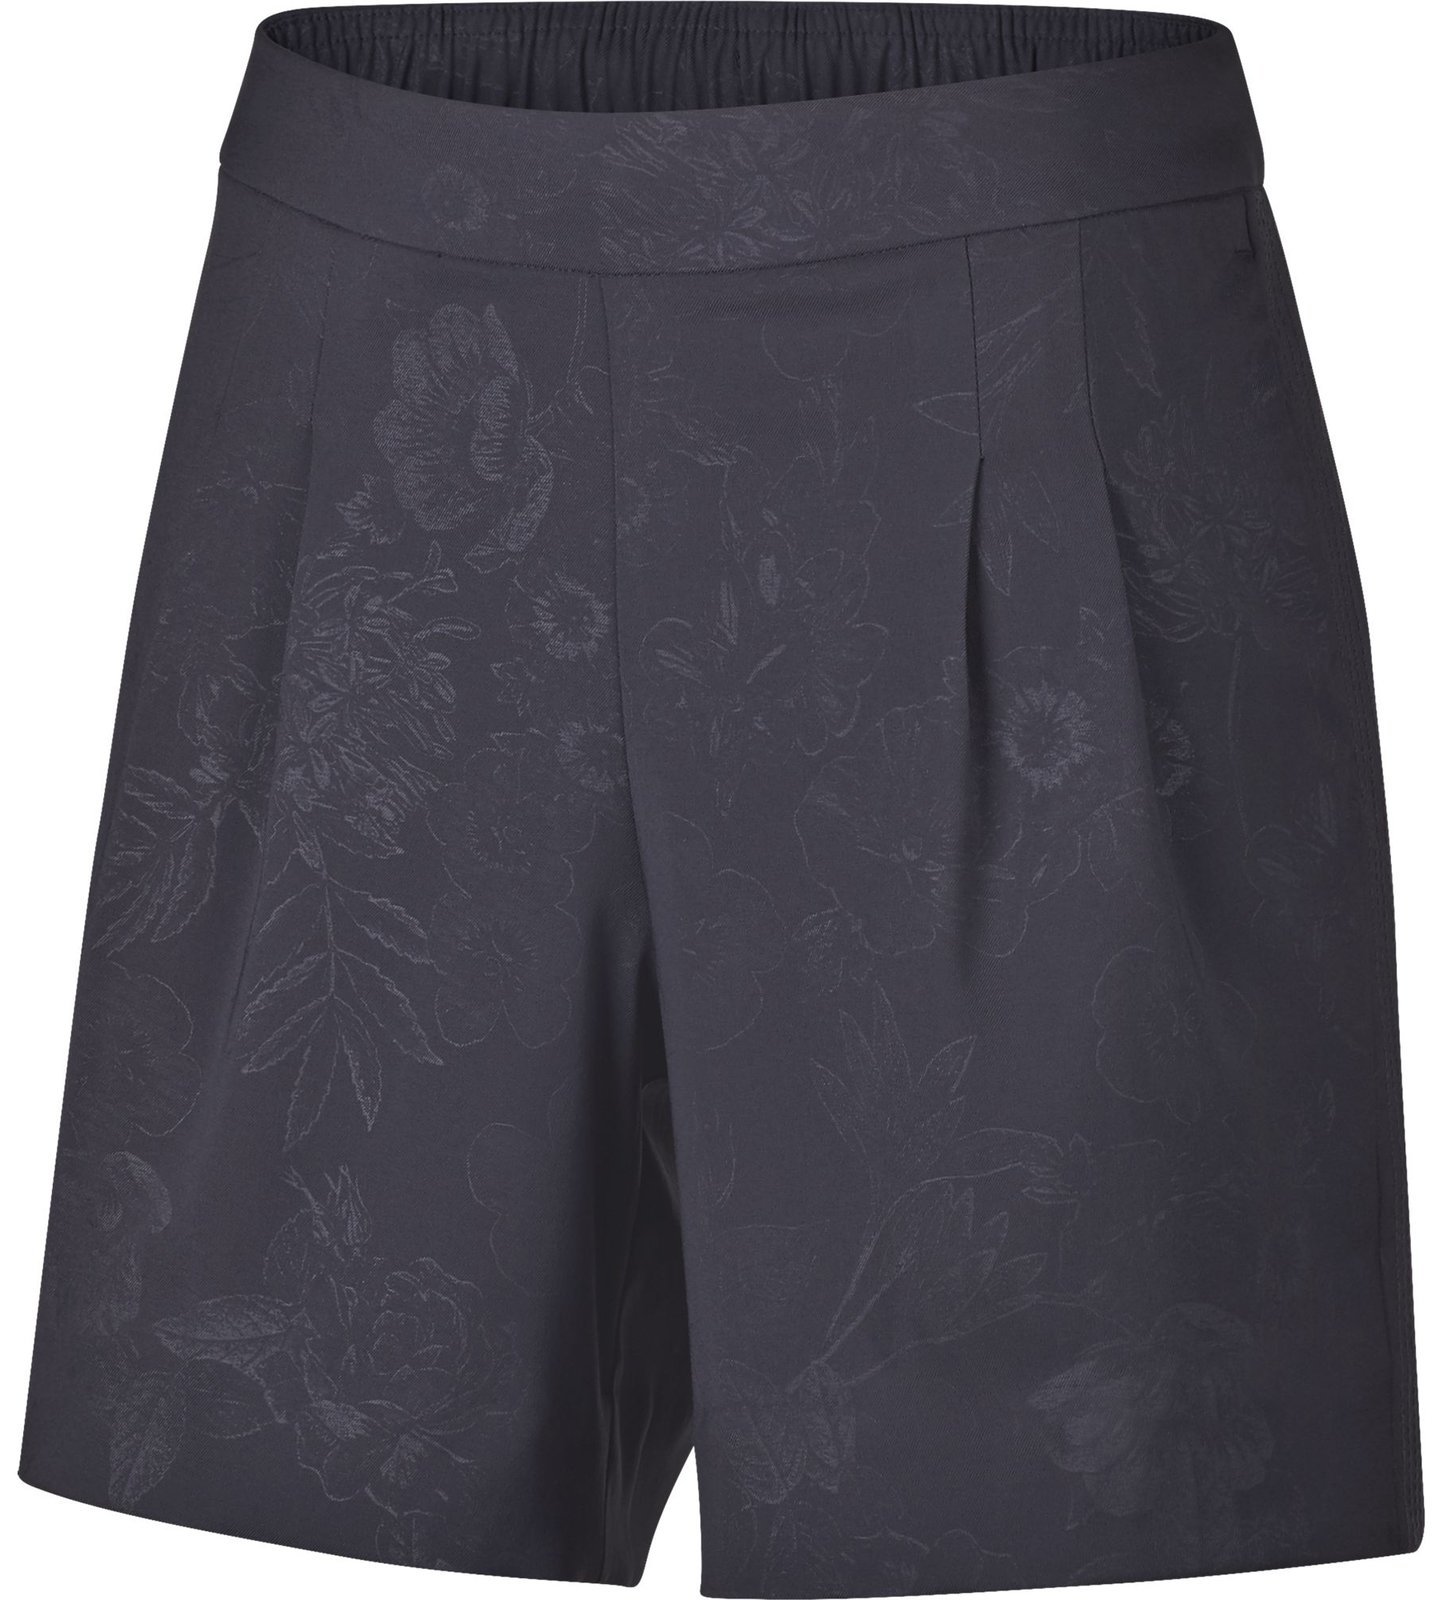 Pantalones cortos Nike Dri-Fit Floral Embossed Gridiron L